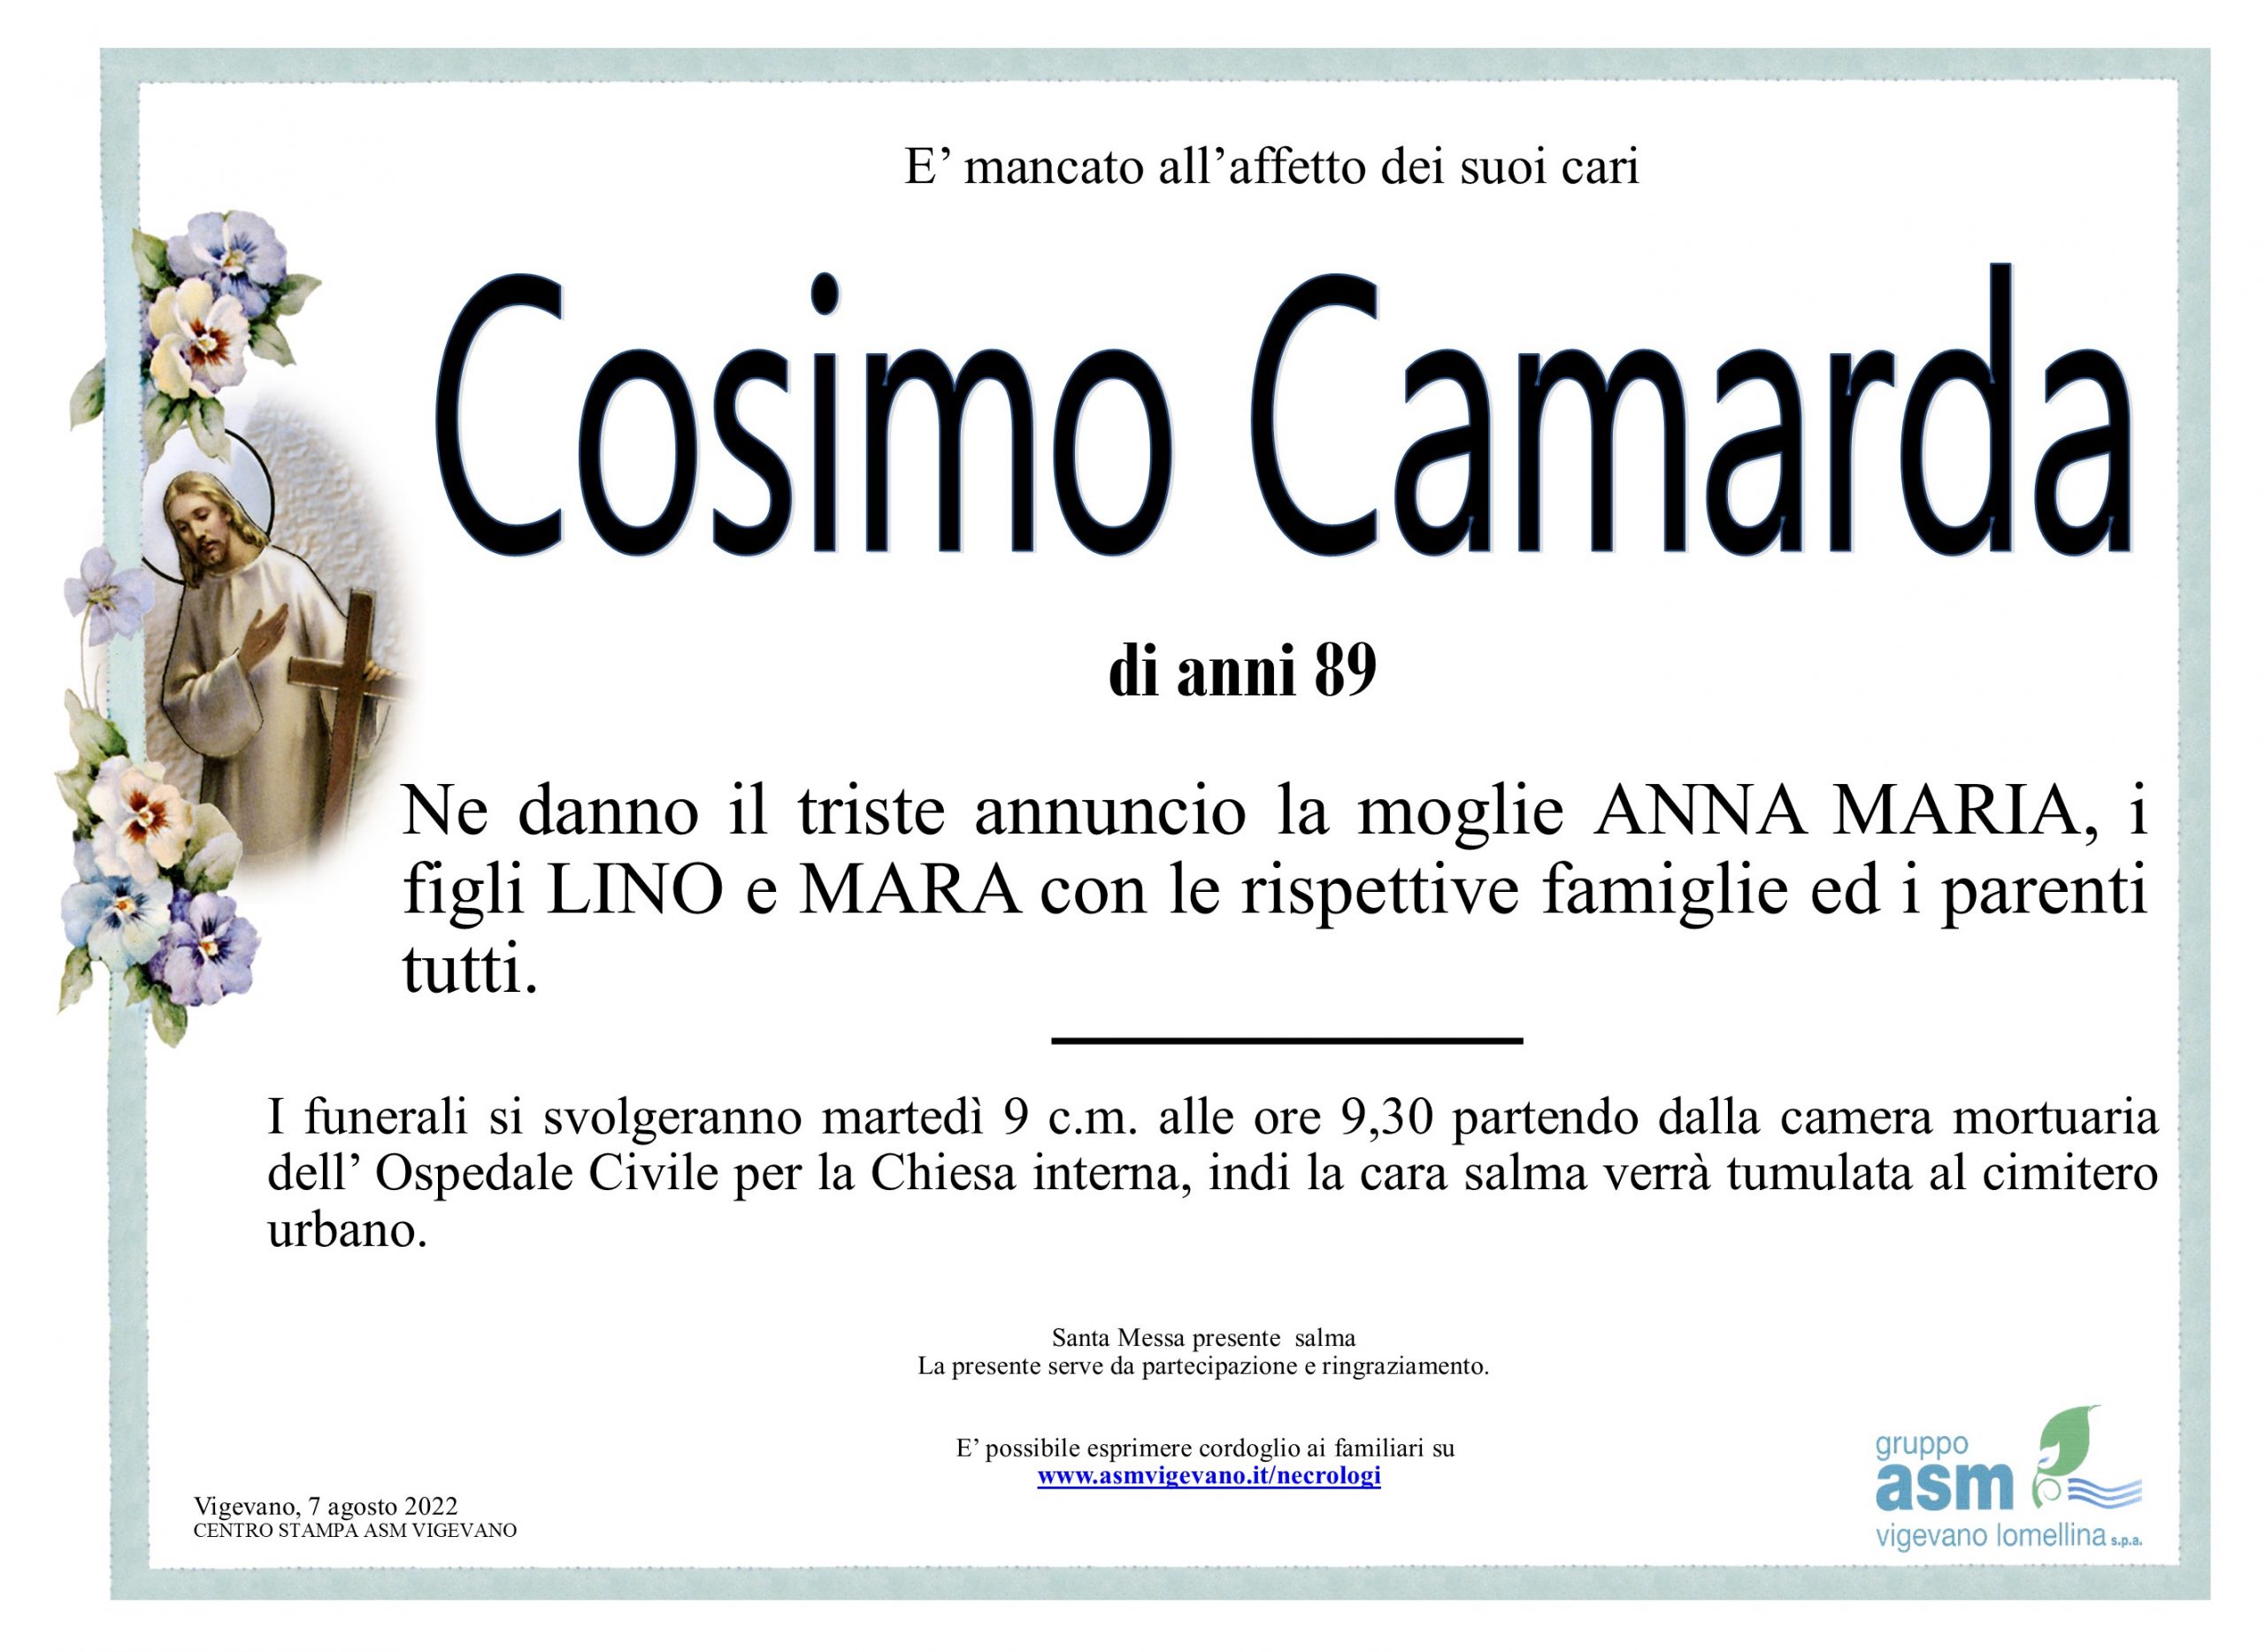 Cosimo Camarda